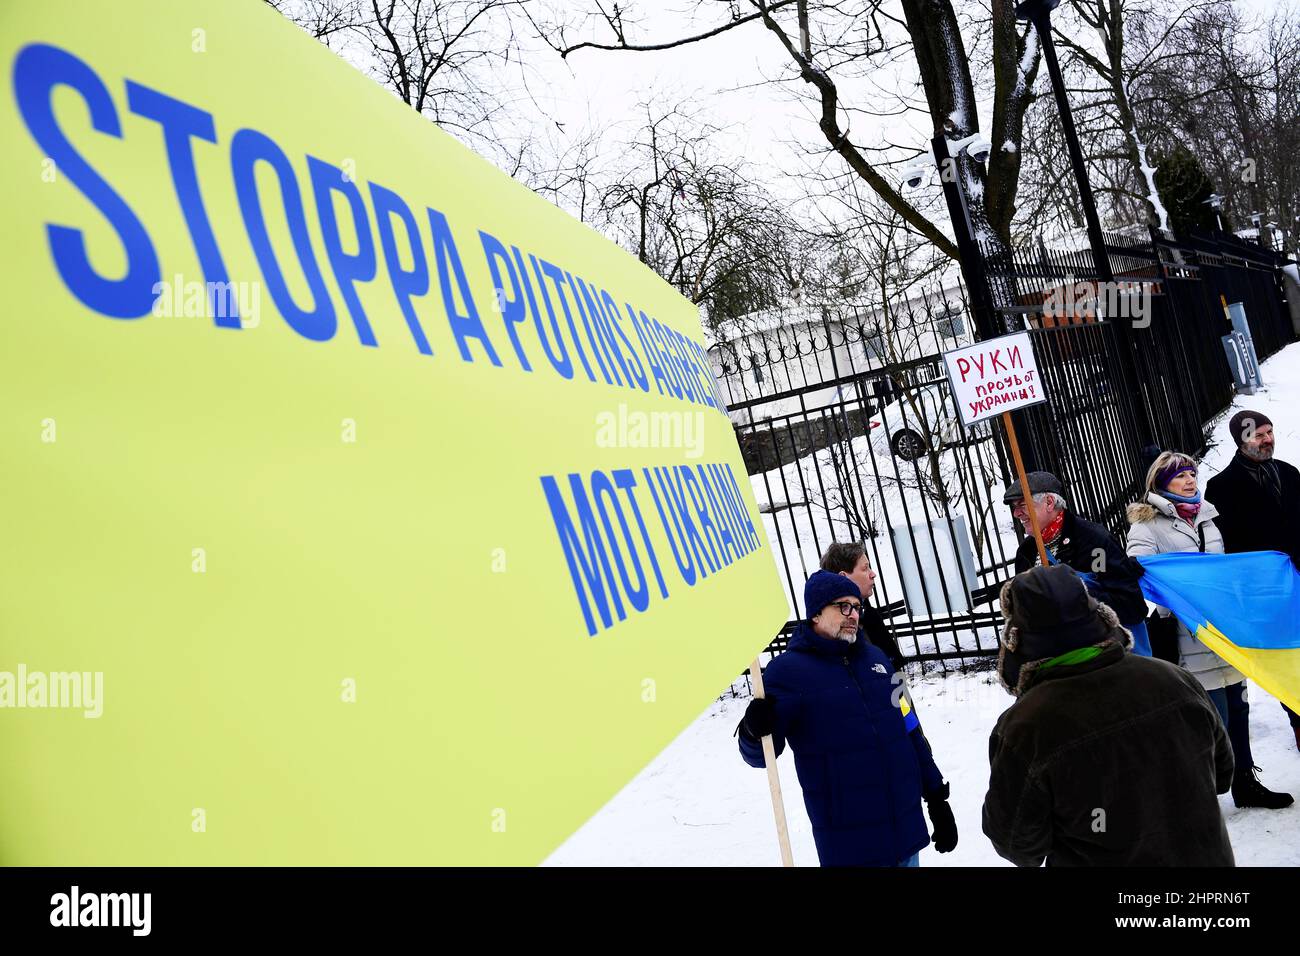 Ein Protestler hält ein Schild mit dem Text "Stoppt Putins-Aggressionen gegen Ukriane" während eines Protests gegen Russlands Aggression gegen die Ukraine vor der russischen Botschaft in Stockholm am 23. Februar 2022. Foto: Paul Wennerholm / TT Stockfoto